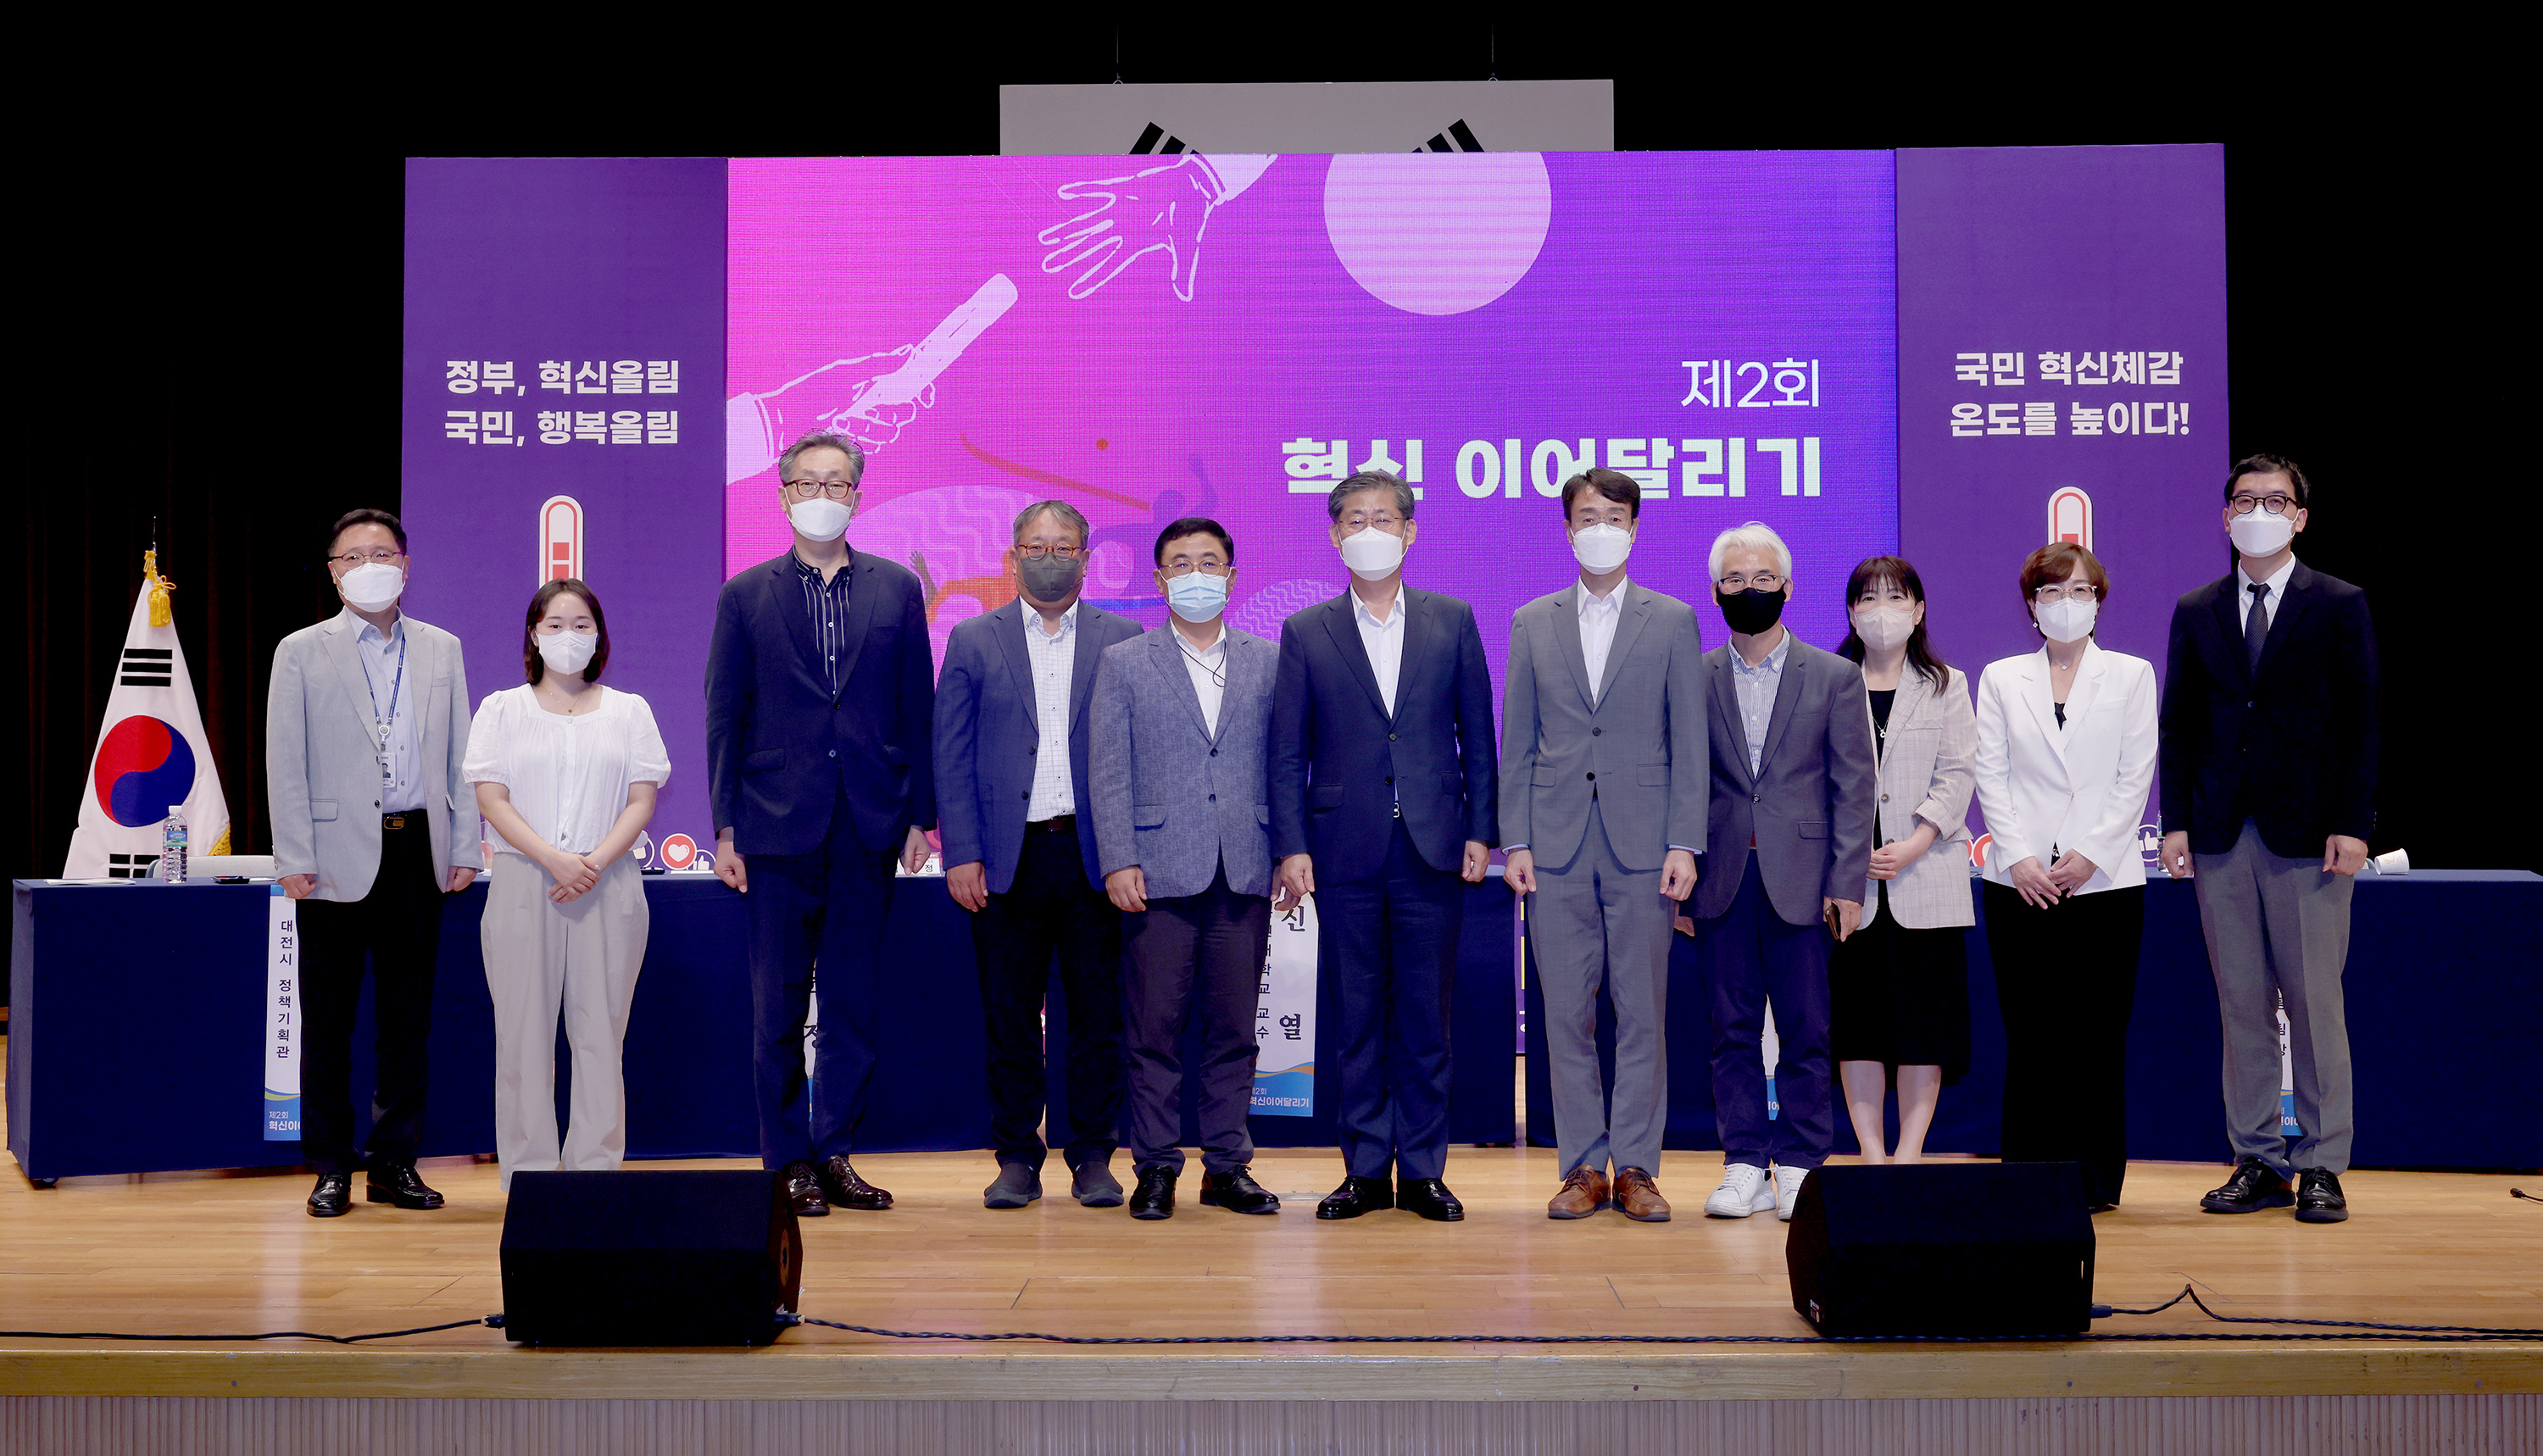 [대전광역시] 2022년 제2회 혁신 이어달리기 개최 관련사진 5